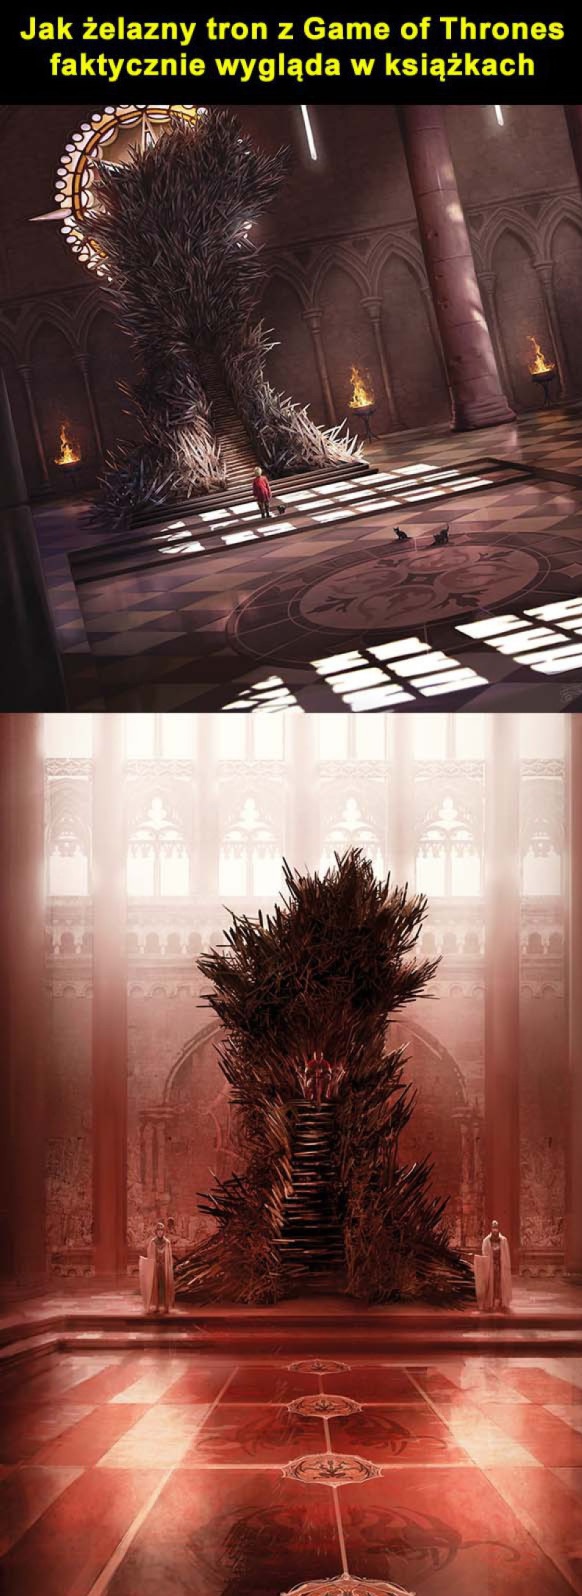 Jak żelazny tron z Gry o tron faktycznie wygląda w ksiązkach Obrazki   